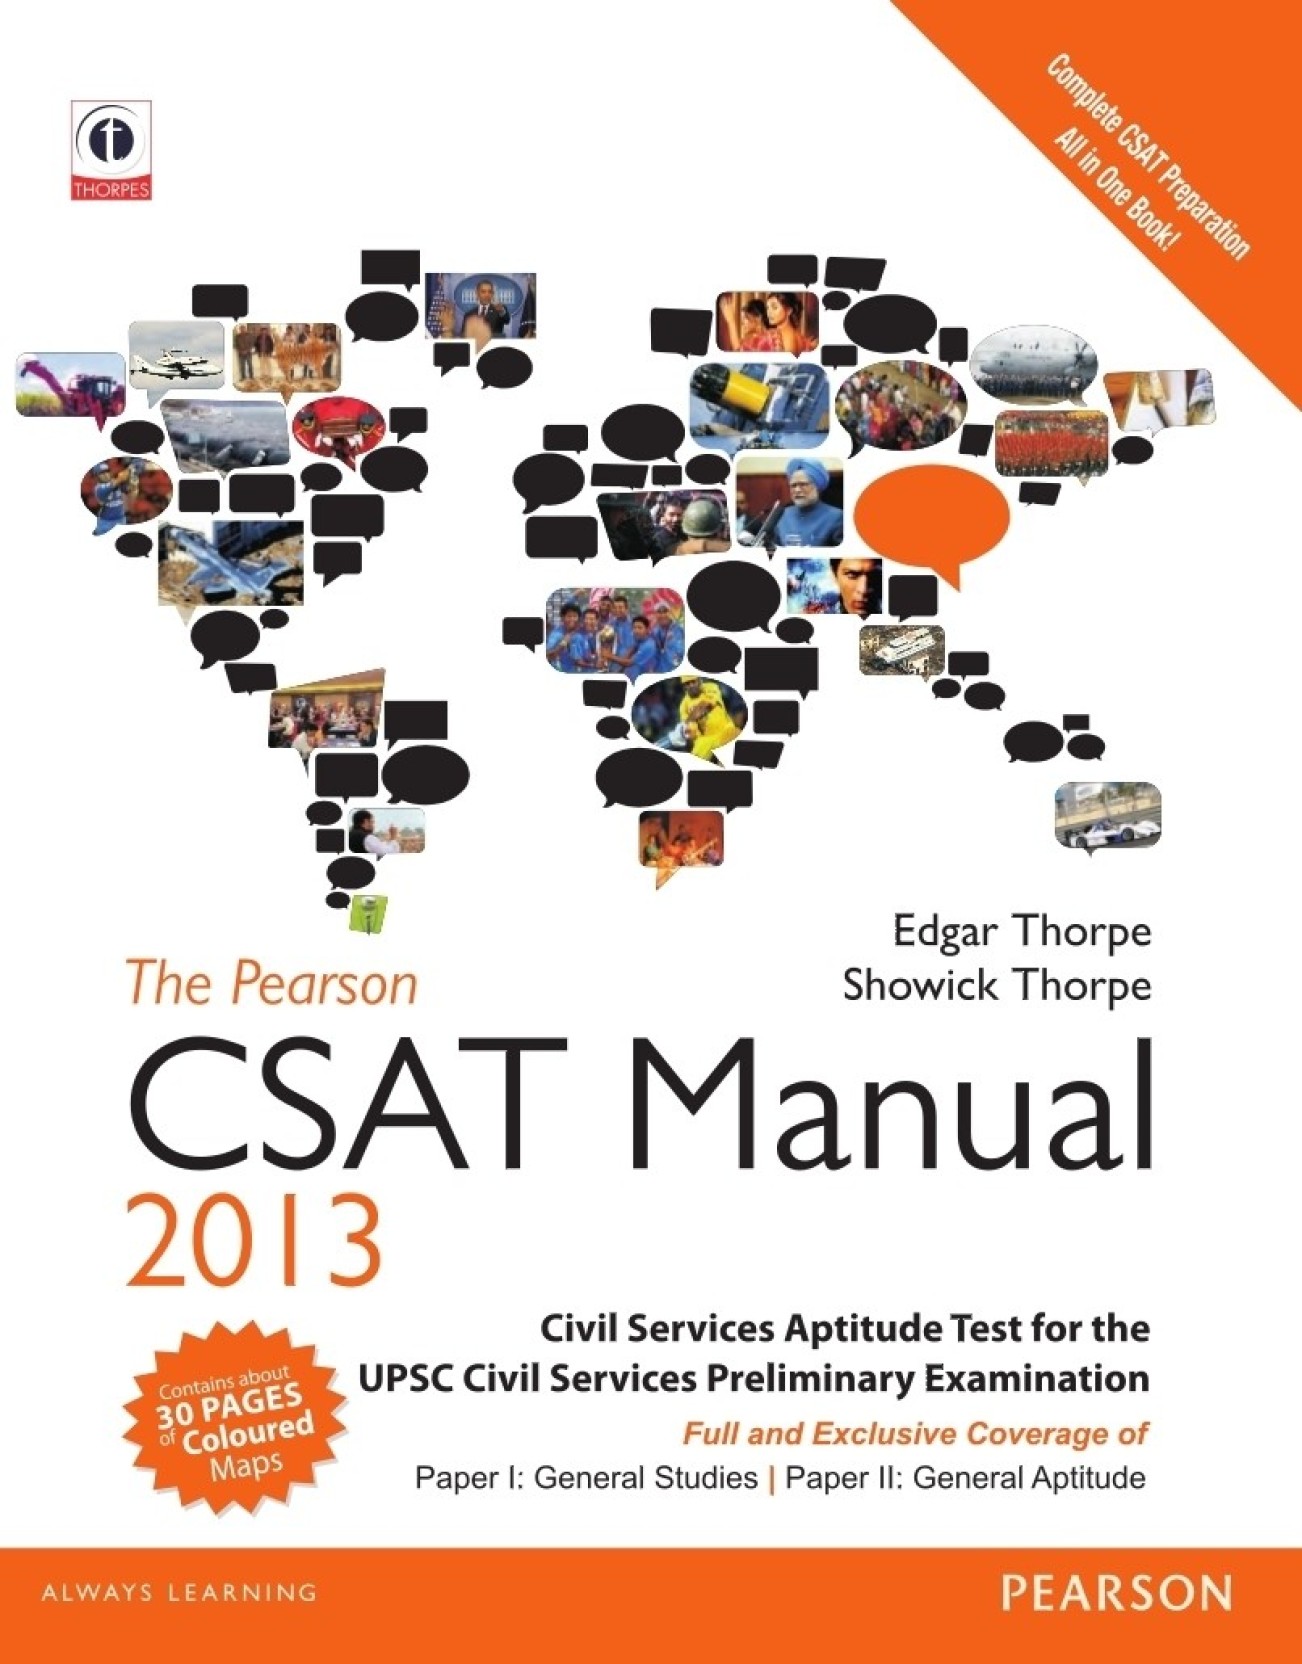 upsc-csat-civil-services-aptitude-test-paper-2-10-practice-sets